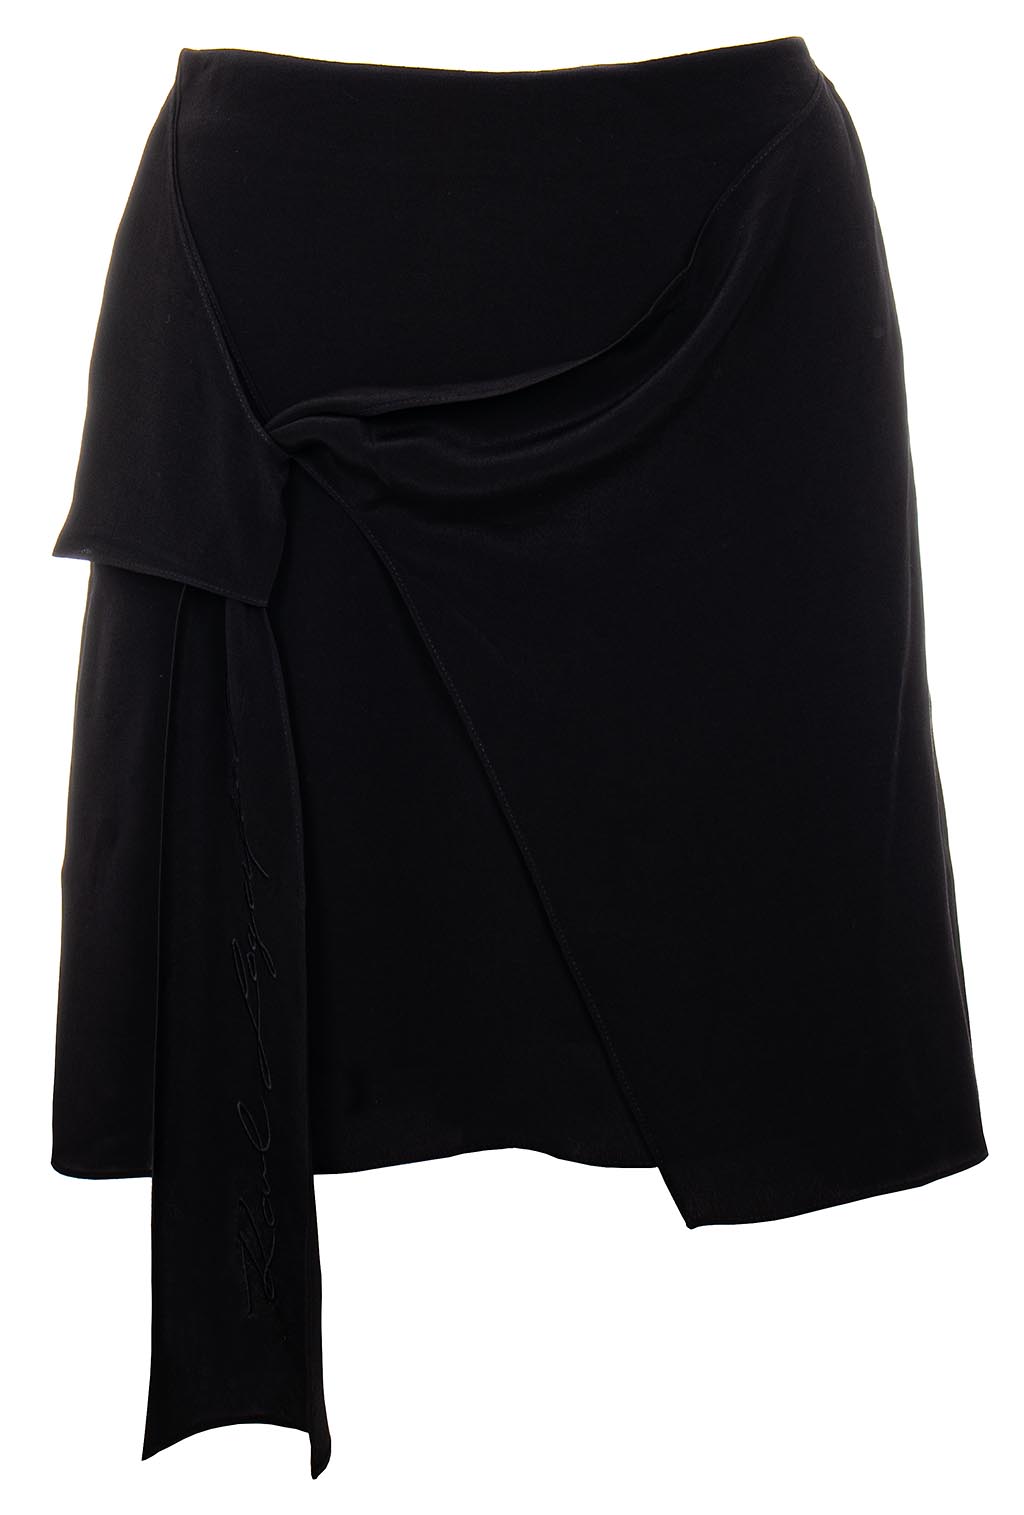 Karl Lagerfeld dámská sukně Satin Bow černá Velikost: EU 32